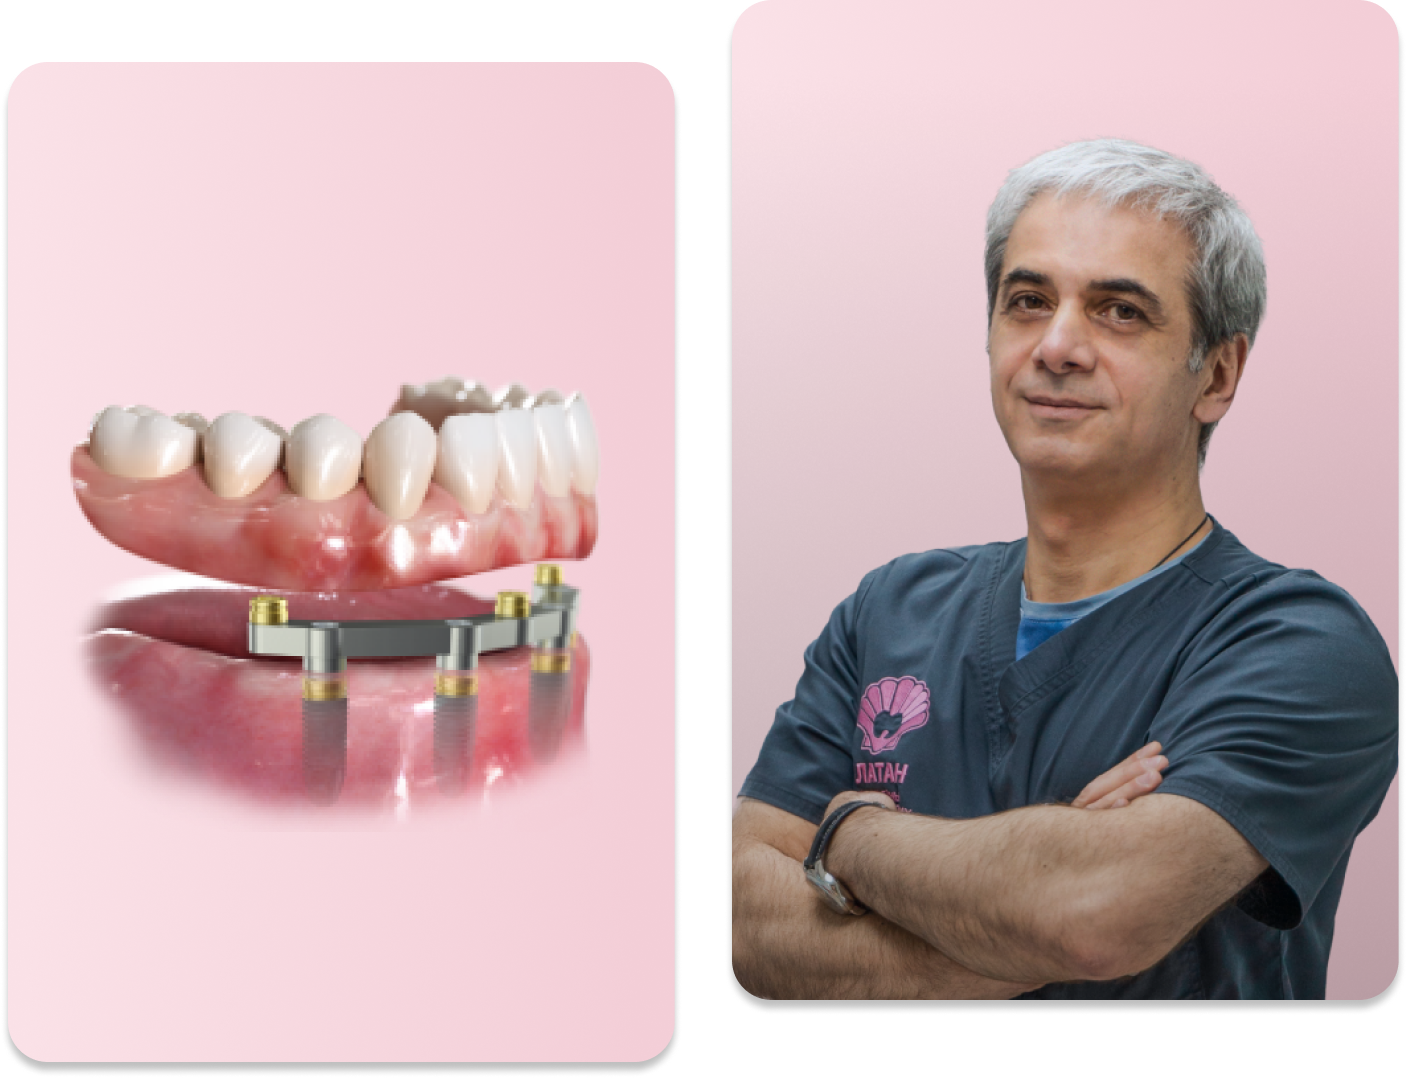 Имплантация зубов All-on-4